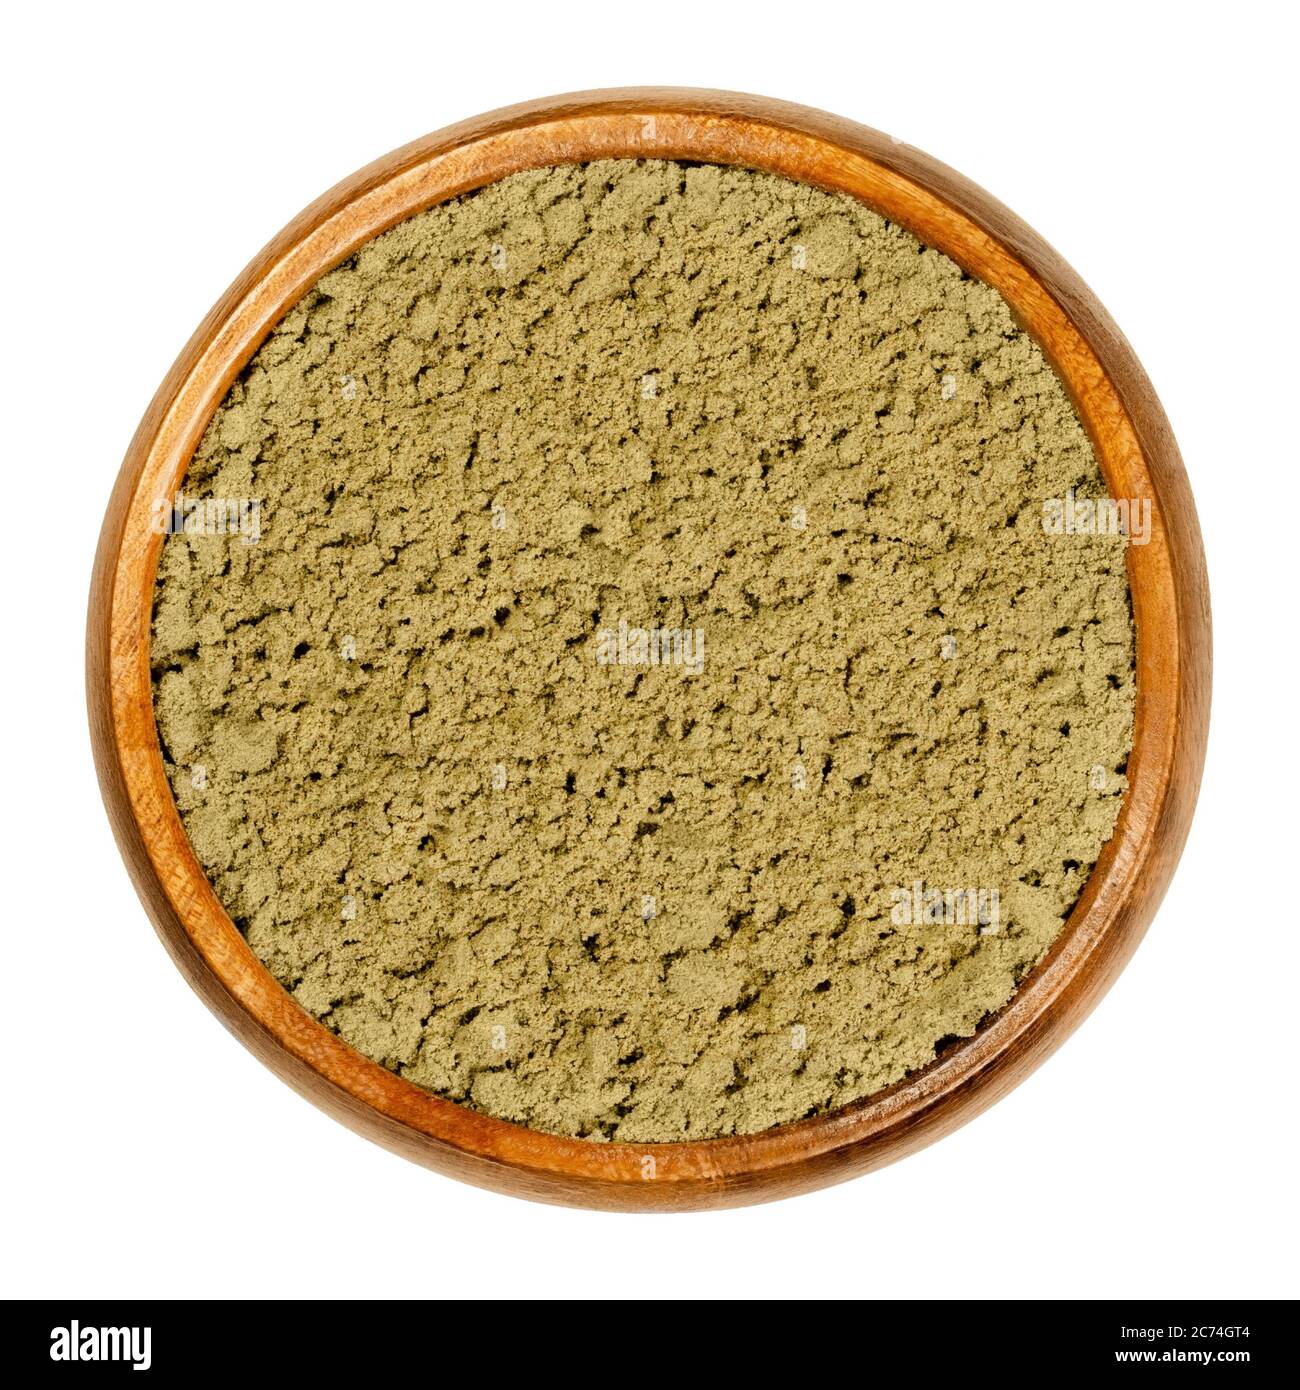 Hanf-Protein-Pulver in Holzschale. Gemahlene Samen von Cannabis sativa. Glutenfreies Nahrungsergänzungsmittel für Sportler. Eine Alternative zu Molkenprotein. Stockfoto